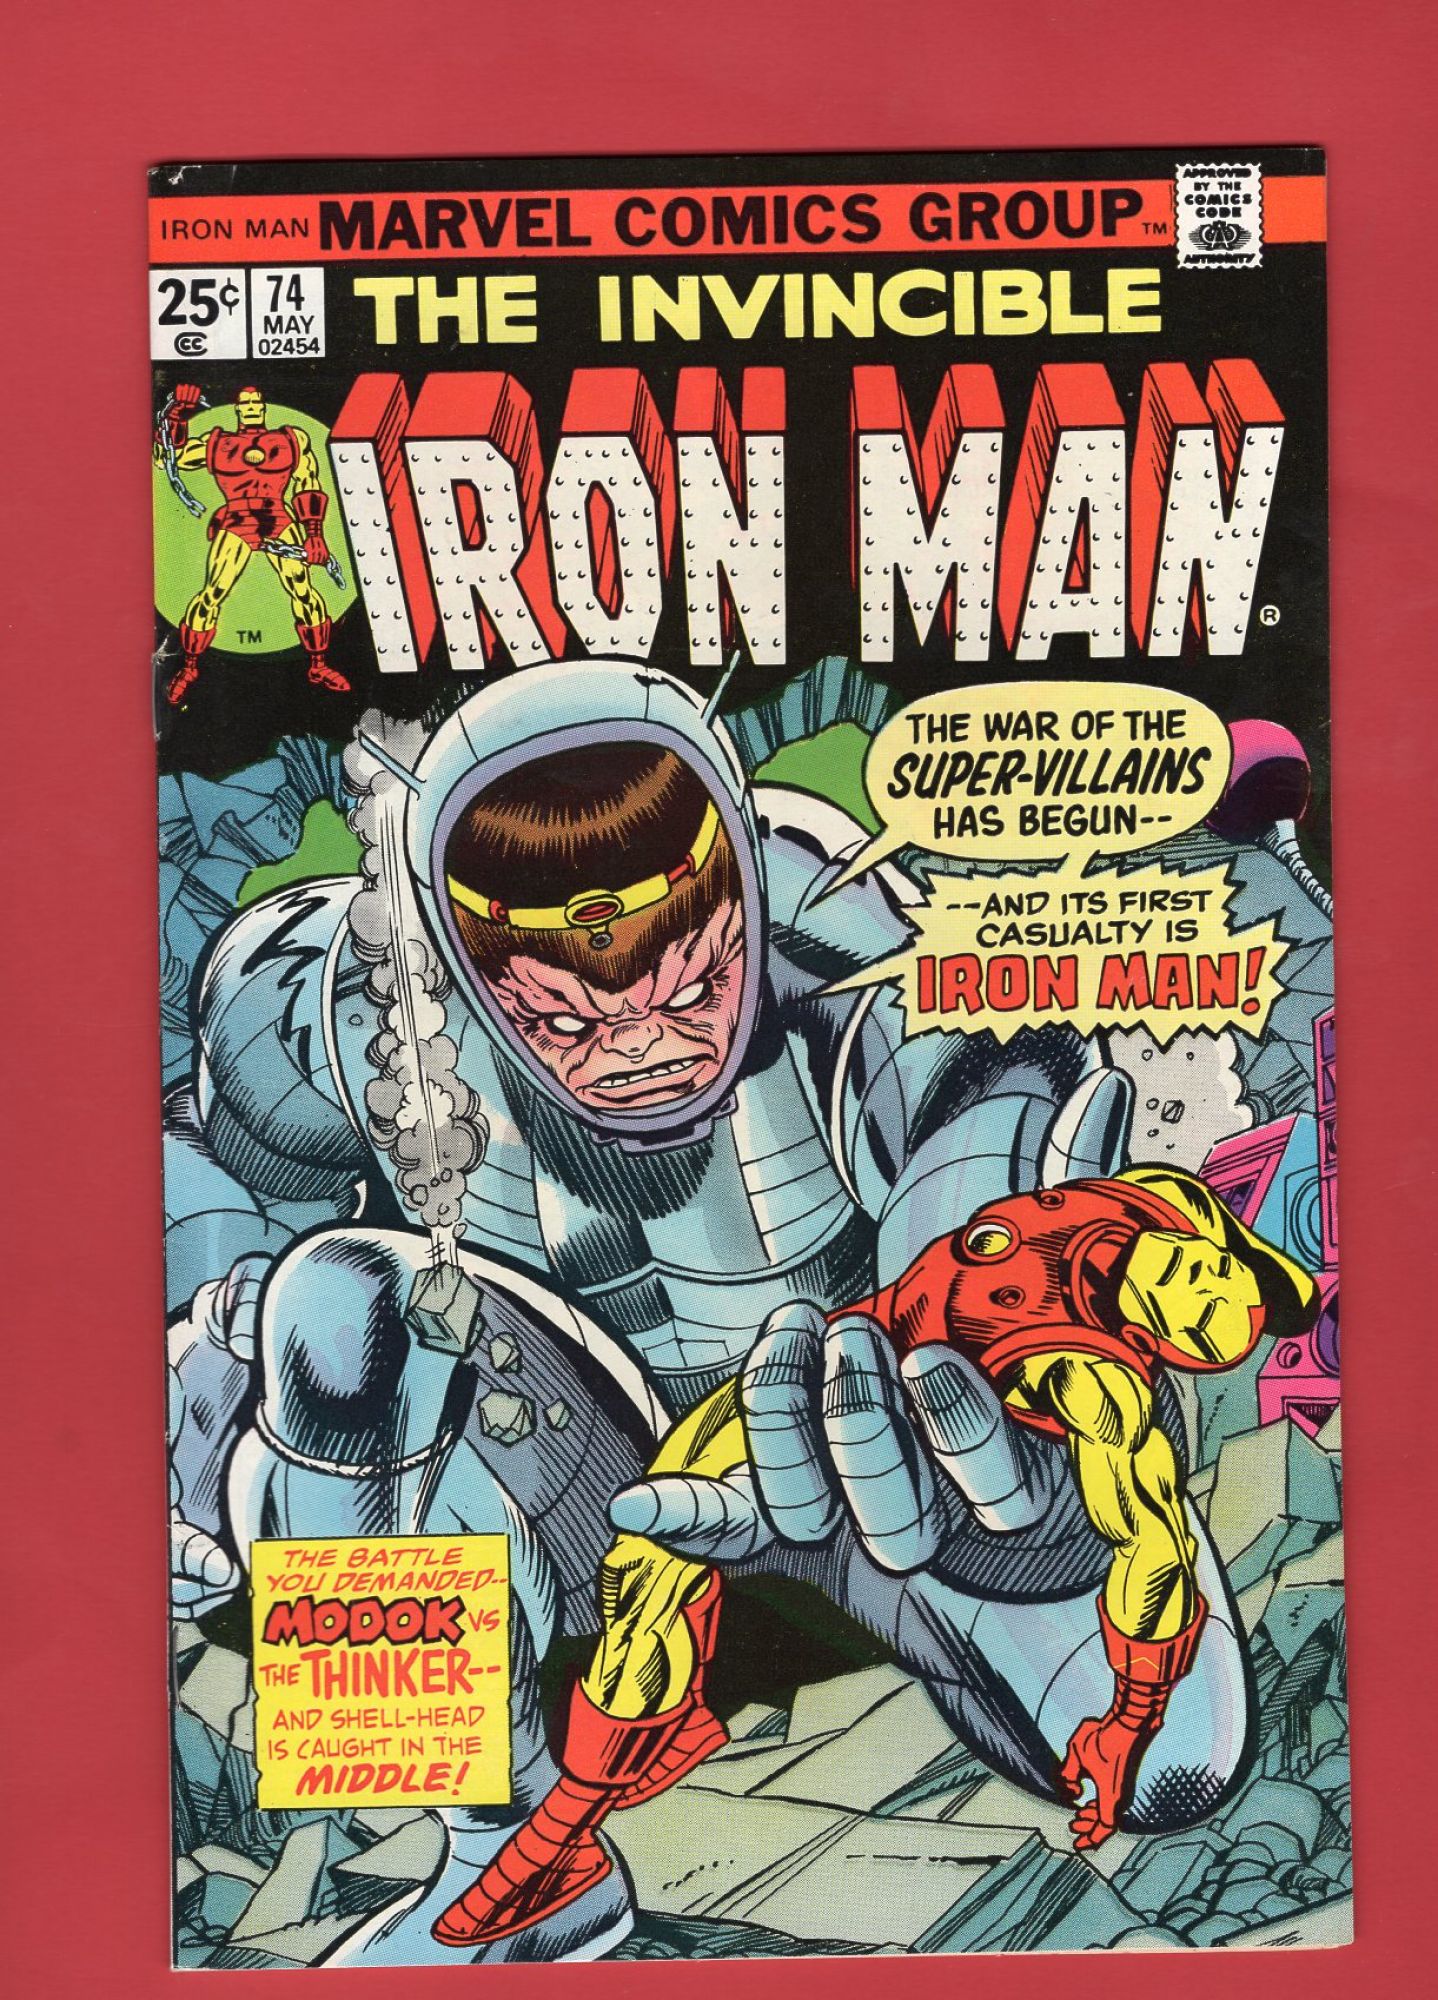 Iron Man #74, May 1975, 7.0 FN/VF